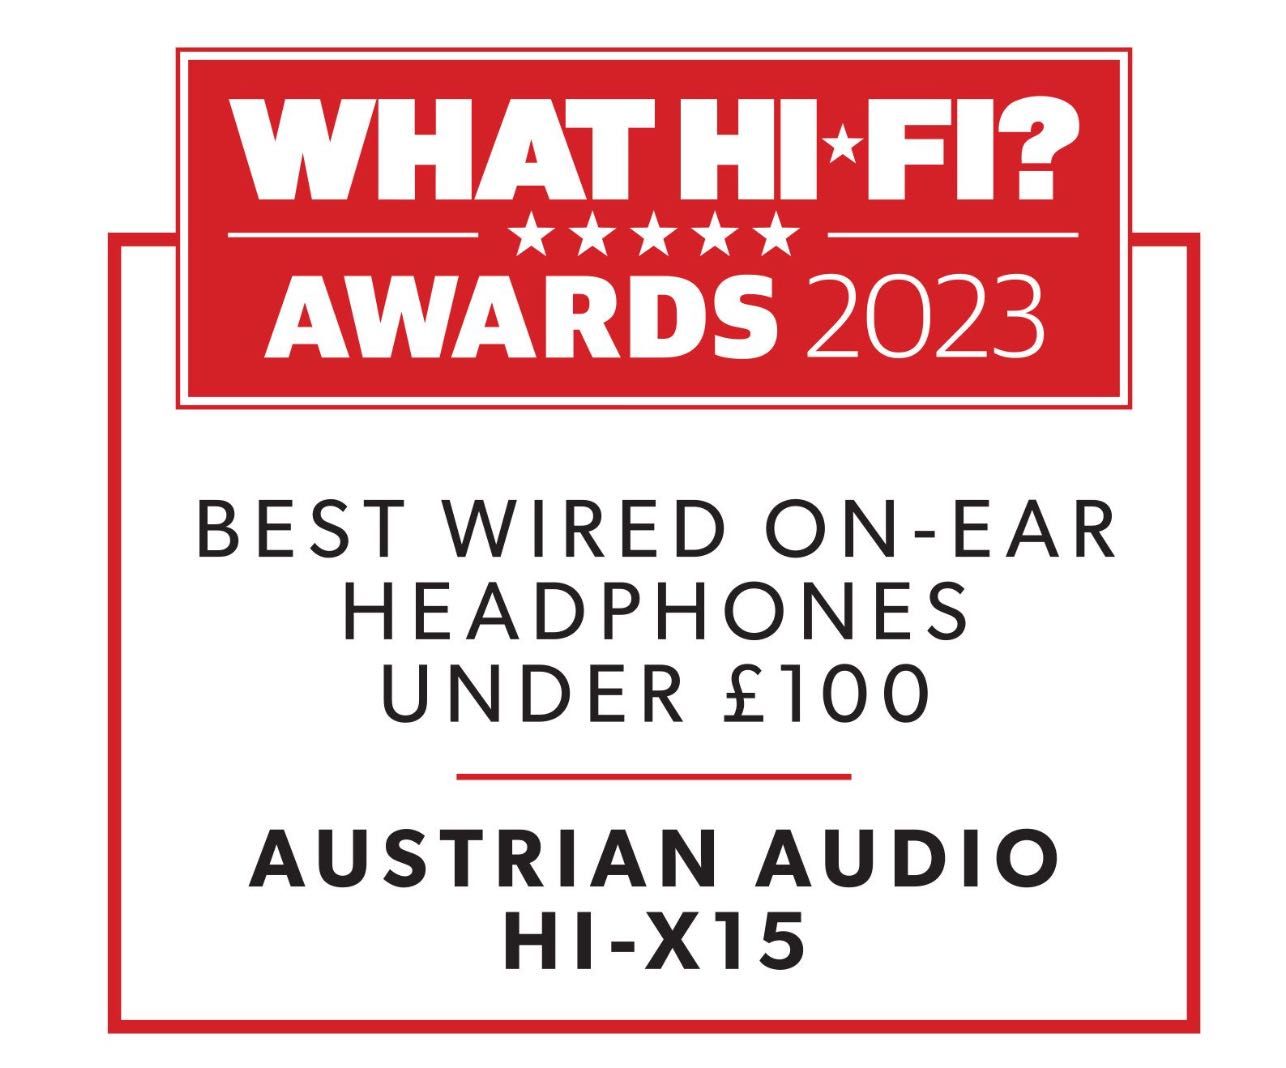 Słuchawki Austrian Audio (AKG) Hi-X15 jak nowe zwycięzca What Hi-Fi